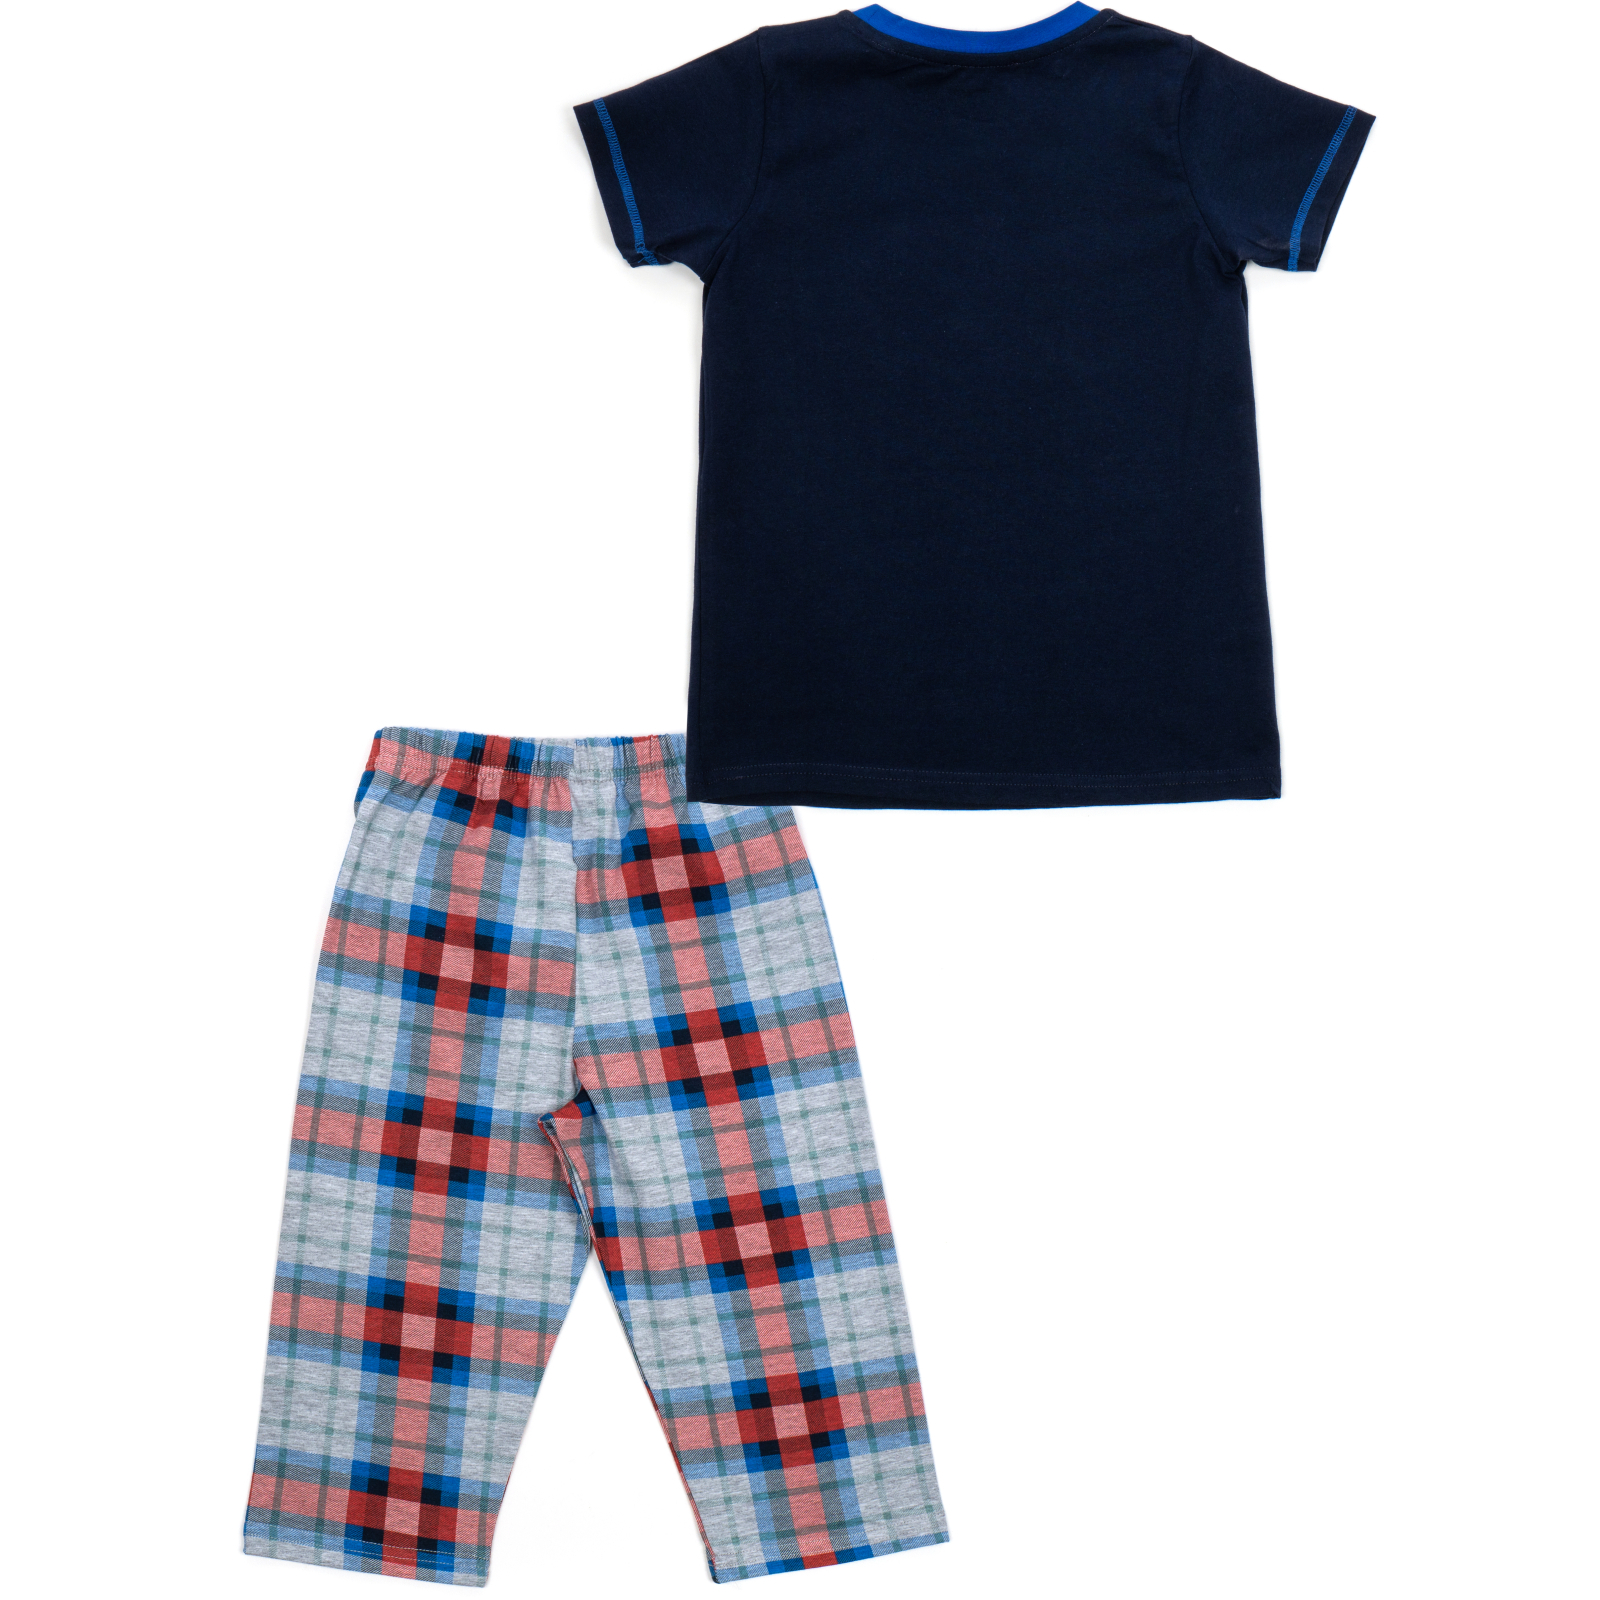 Пижама Matilda с футболкой (11701-3-128B-blue) изображение 4